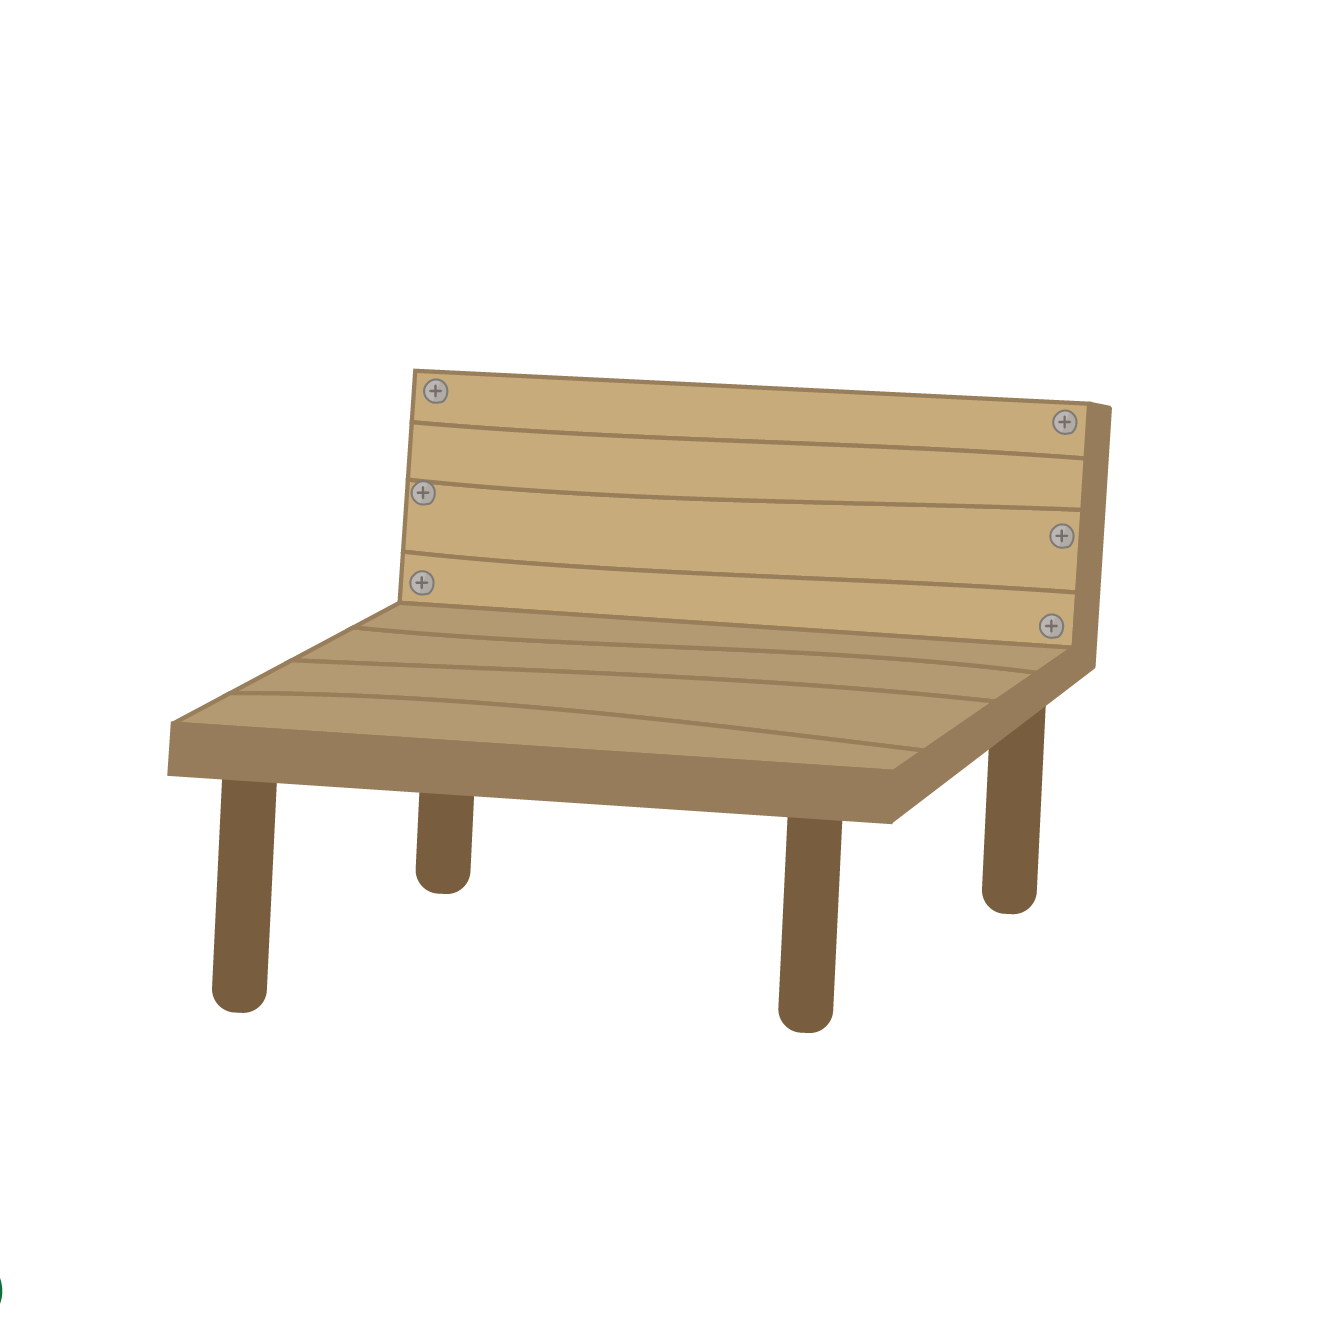 木製のベンチのイラスト 商用フリー 無料 のイラスト素材なら イラストマンション